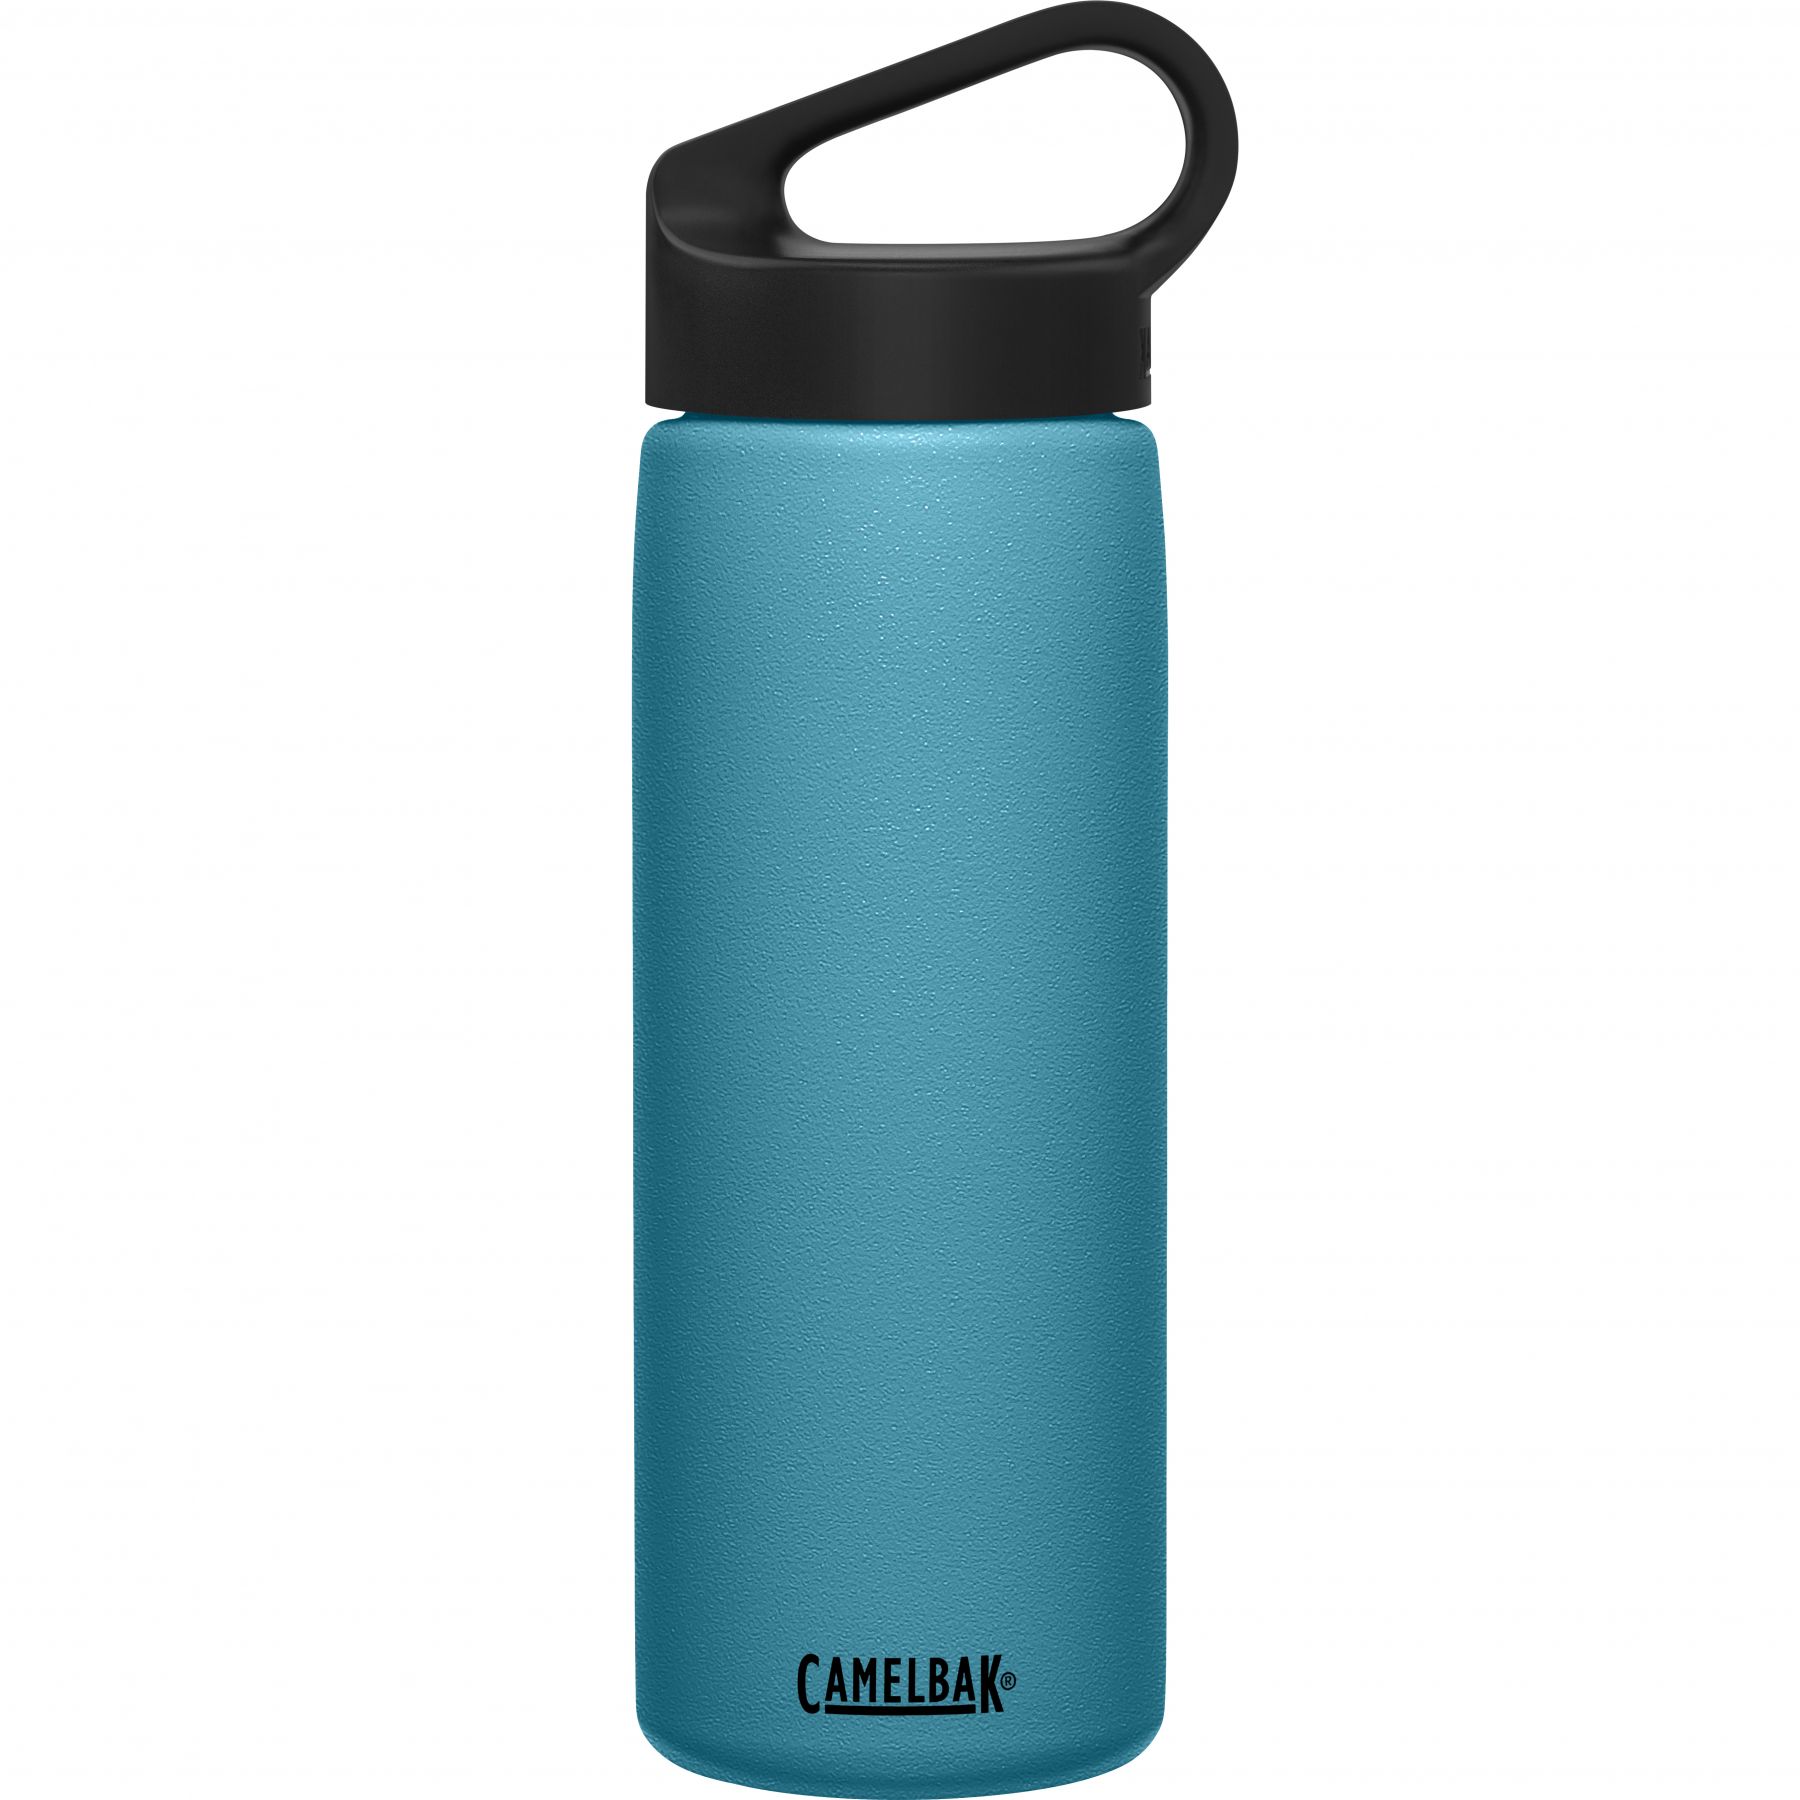 Brug CamelBak Carry Cap, drikkedunk, 0,6L, blå til en forbedret oplevelse